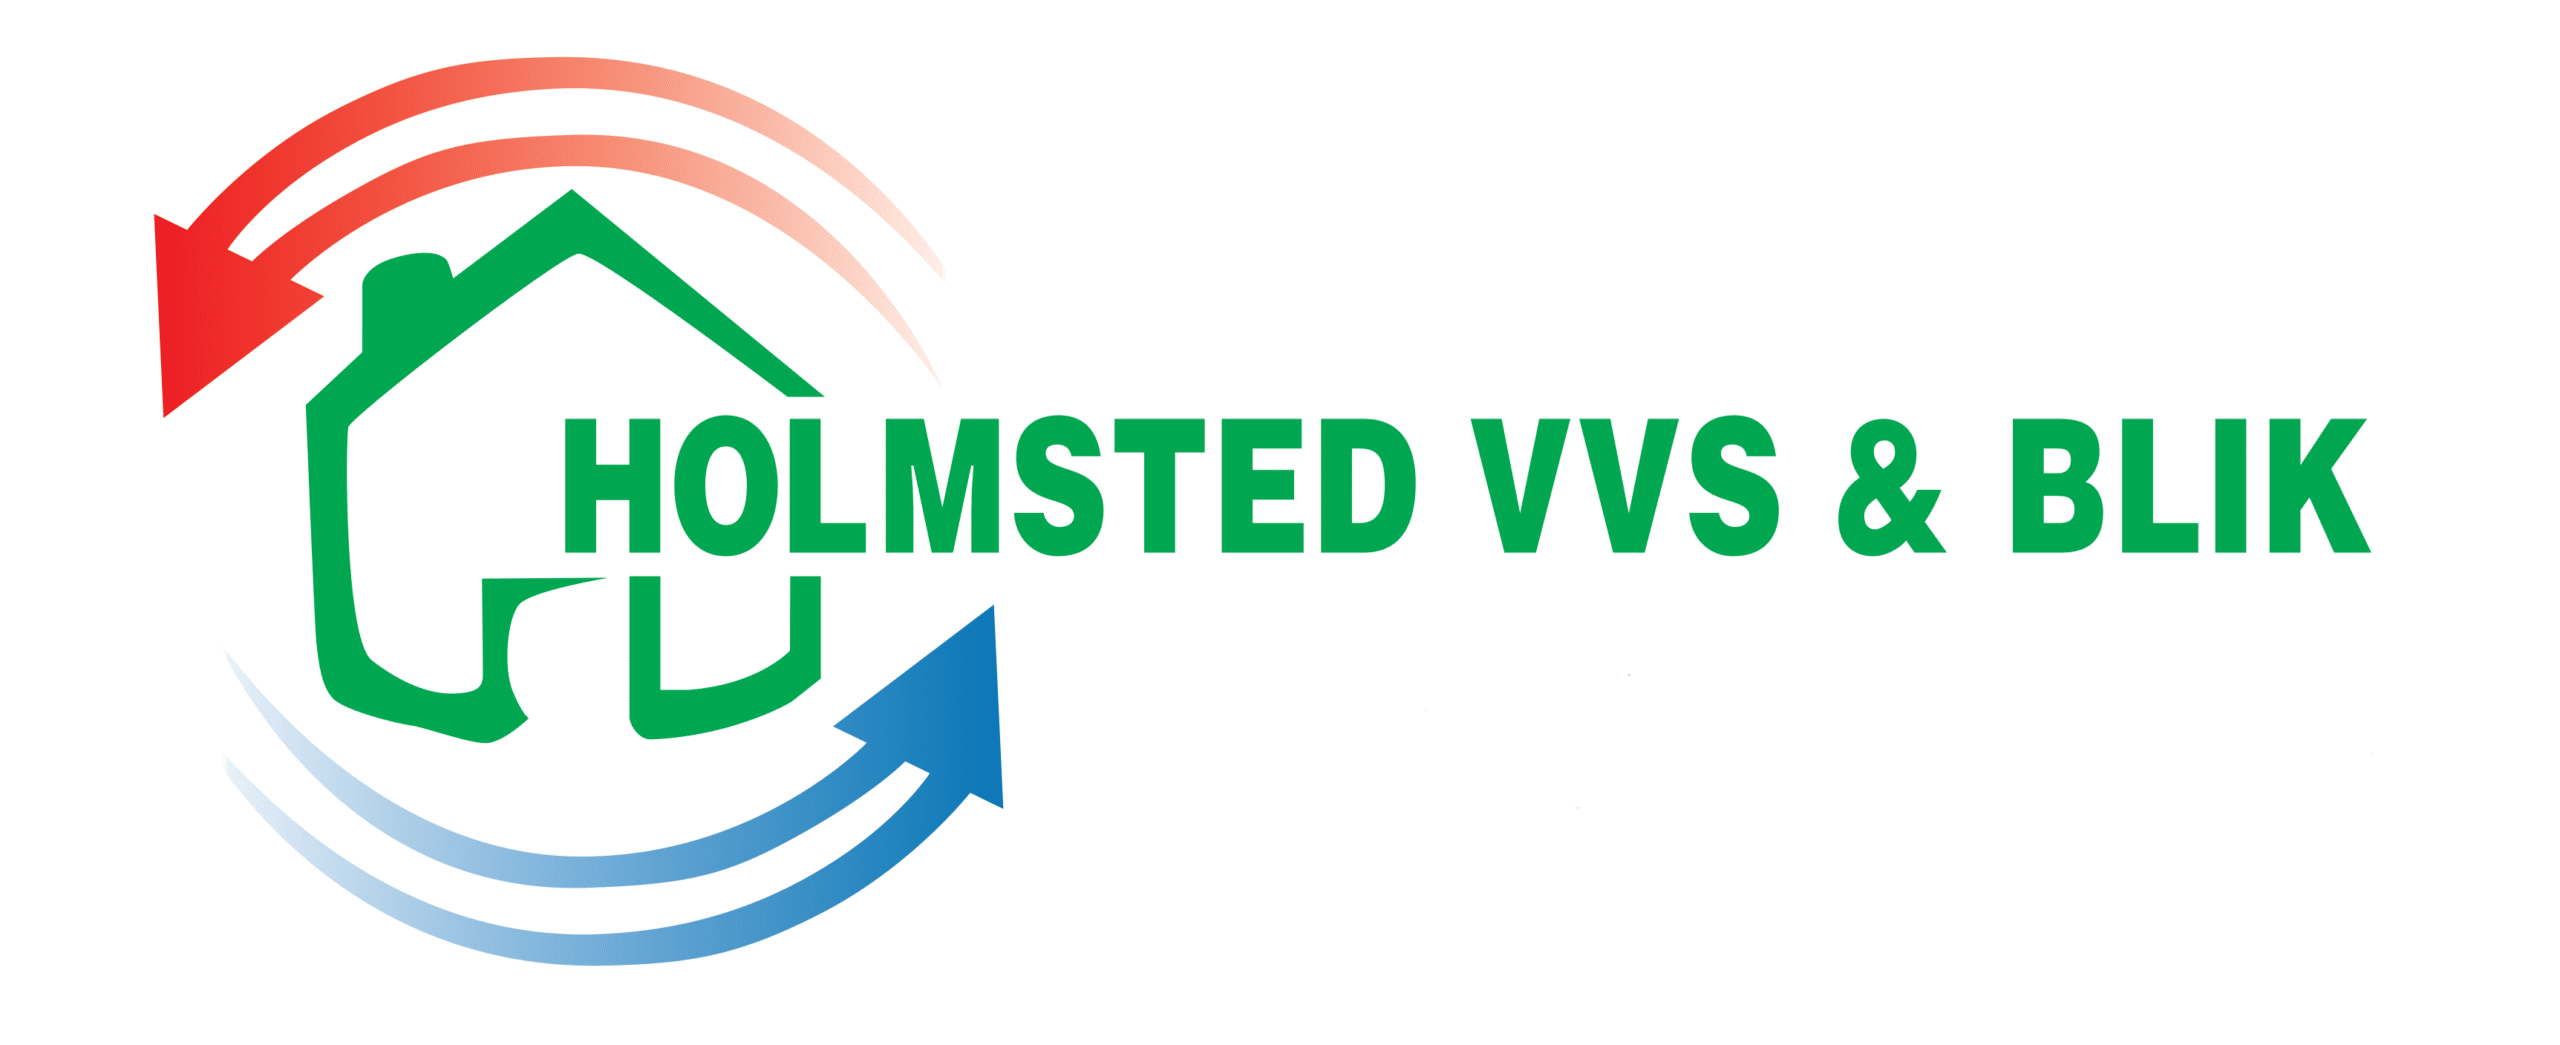 Holmsted VVS & Blik ApS